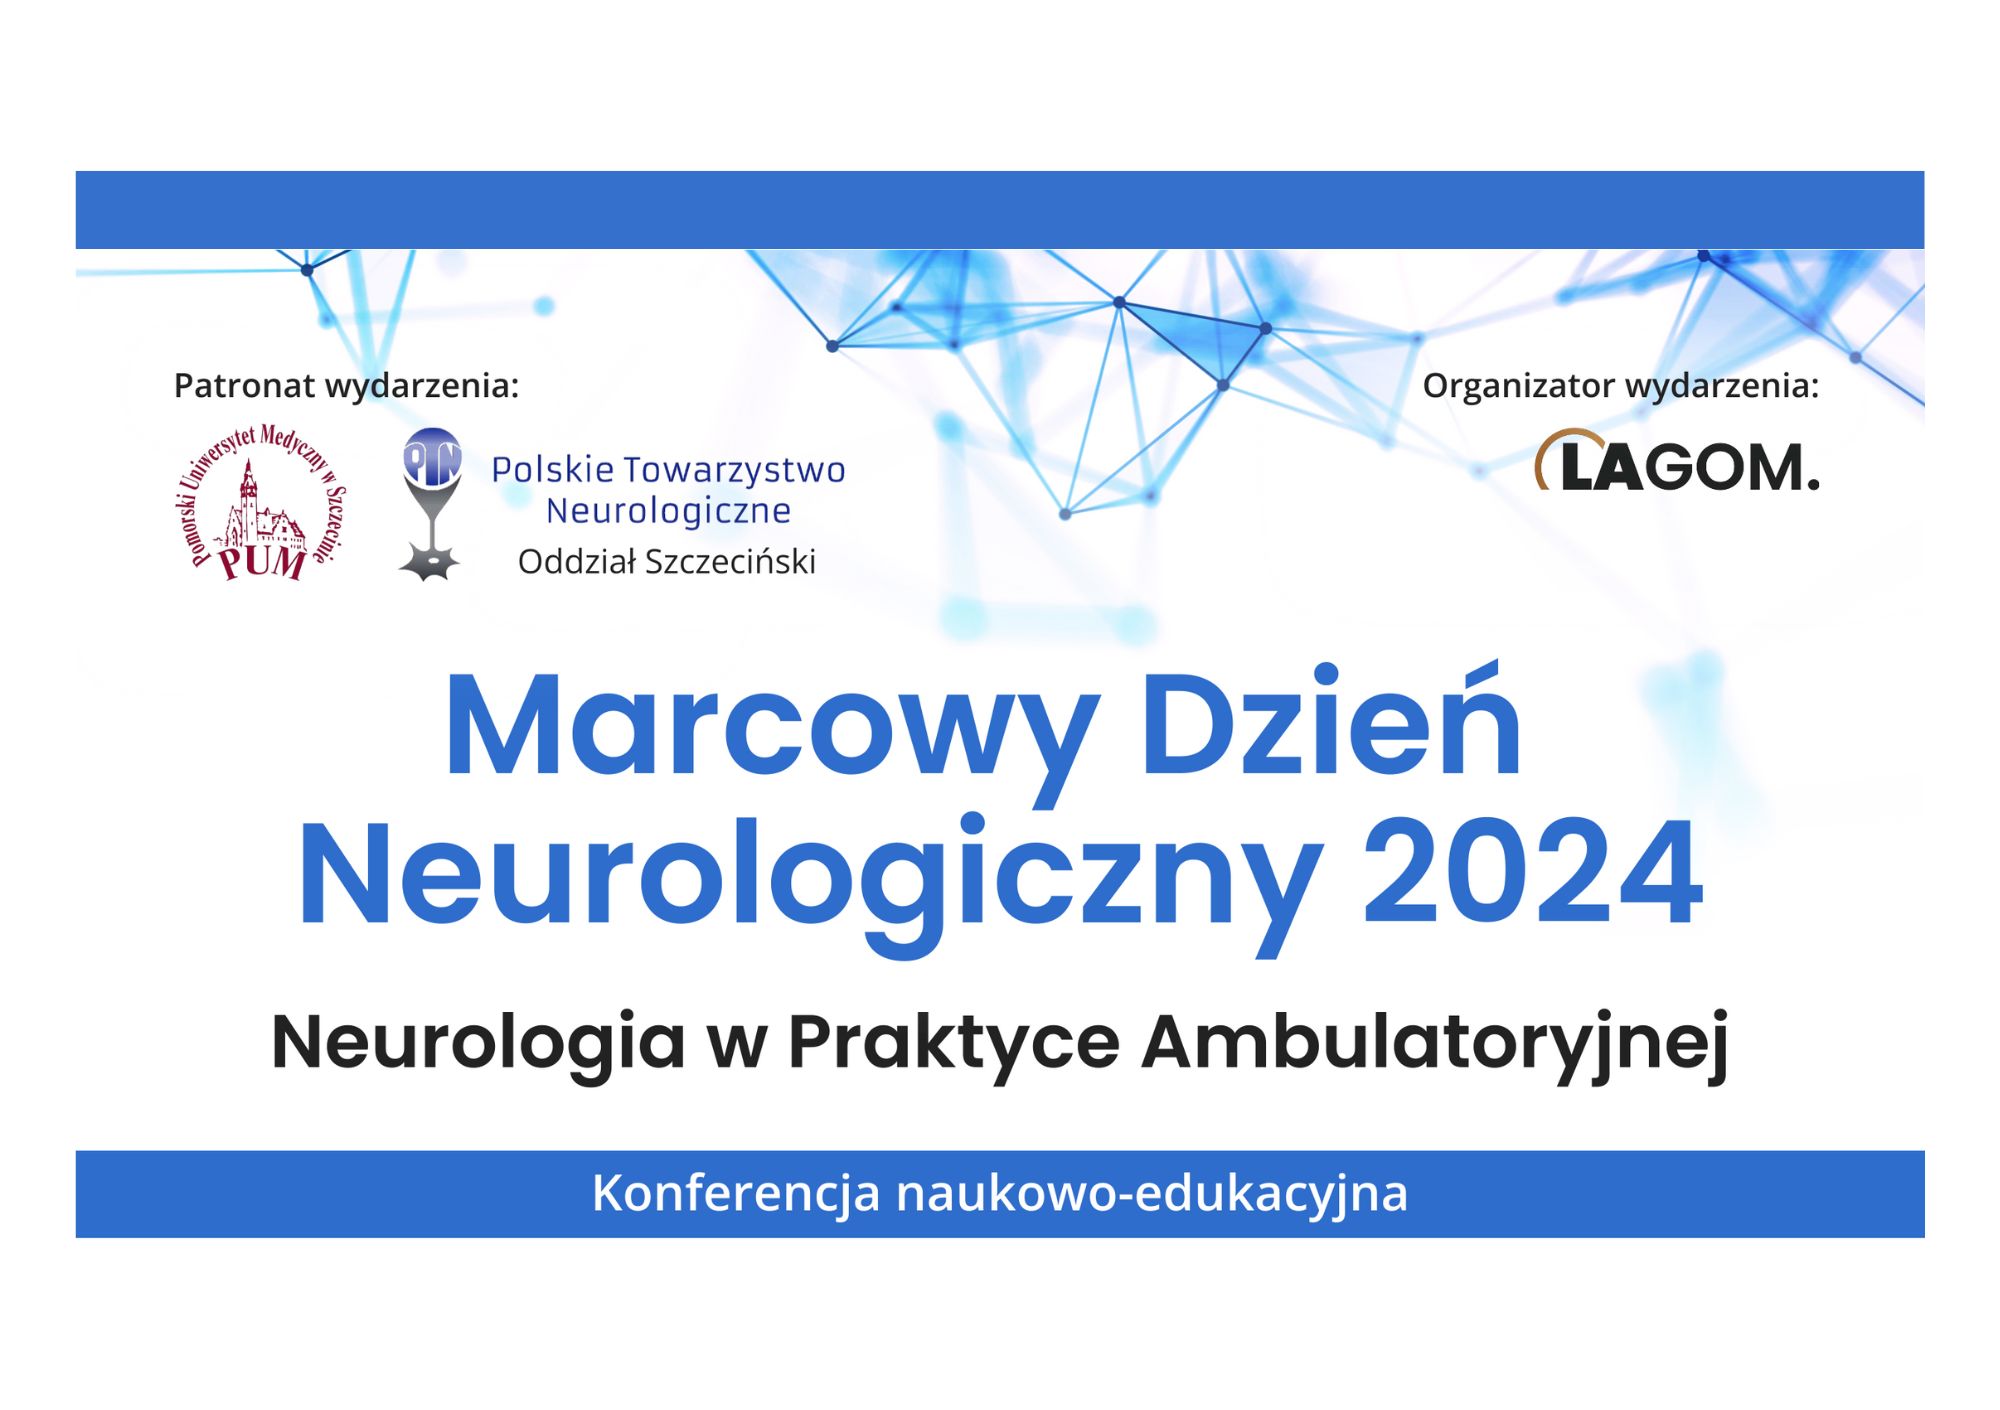 Marcowy Dzień Neurologiczny 2024 - Neurologia w praktyce ambulatoryjnej